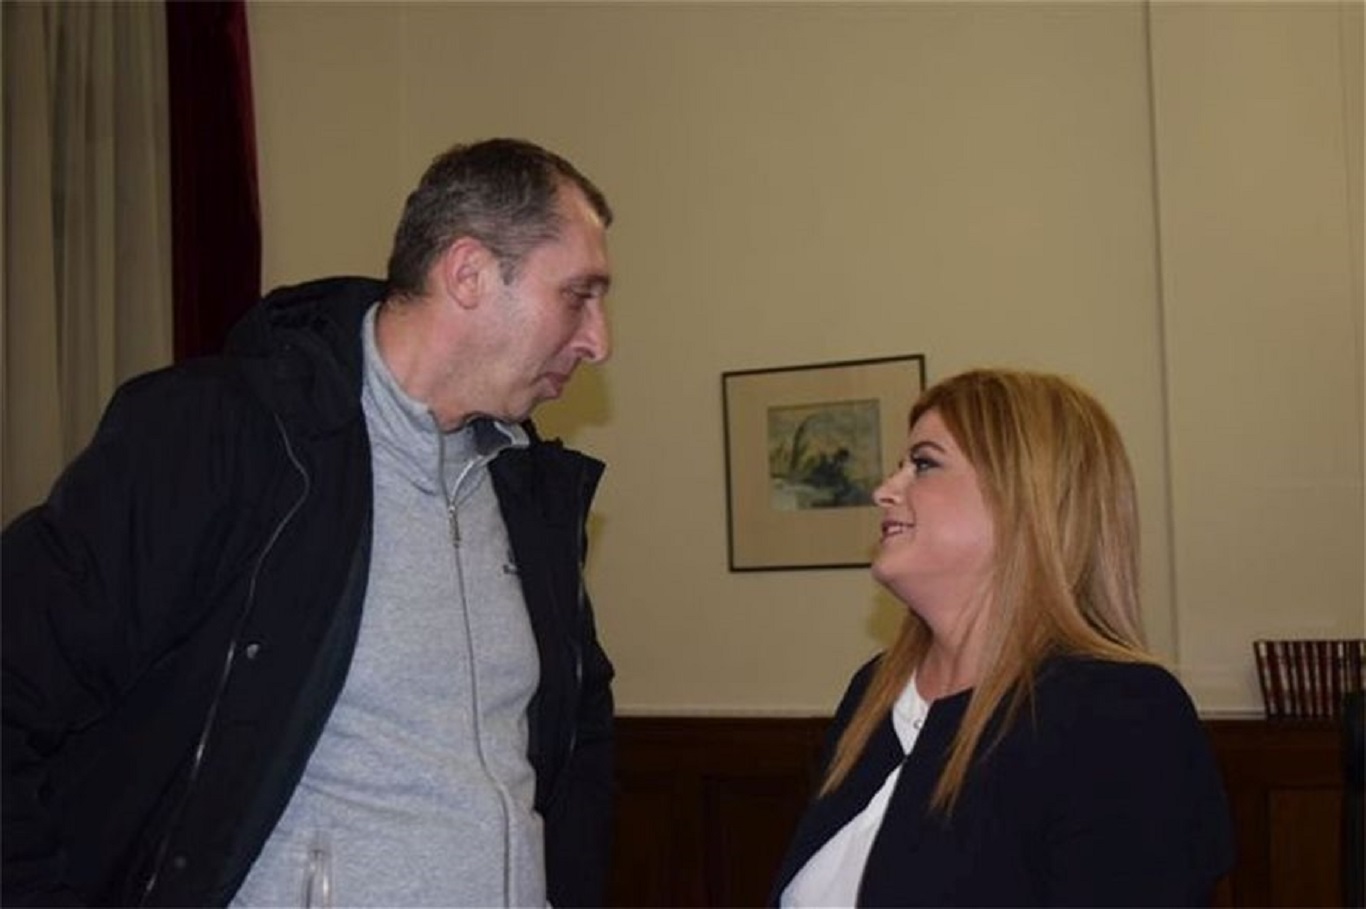 Υποψήφιος δημοτικός σύμβουλος με την Κ. Νοτοπούλου ο παλαίμαχος μπασκετμπολίστας Βασίλης Λυπηρίδης